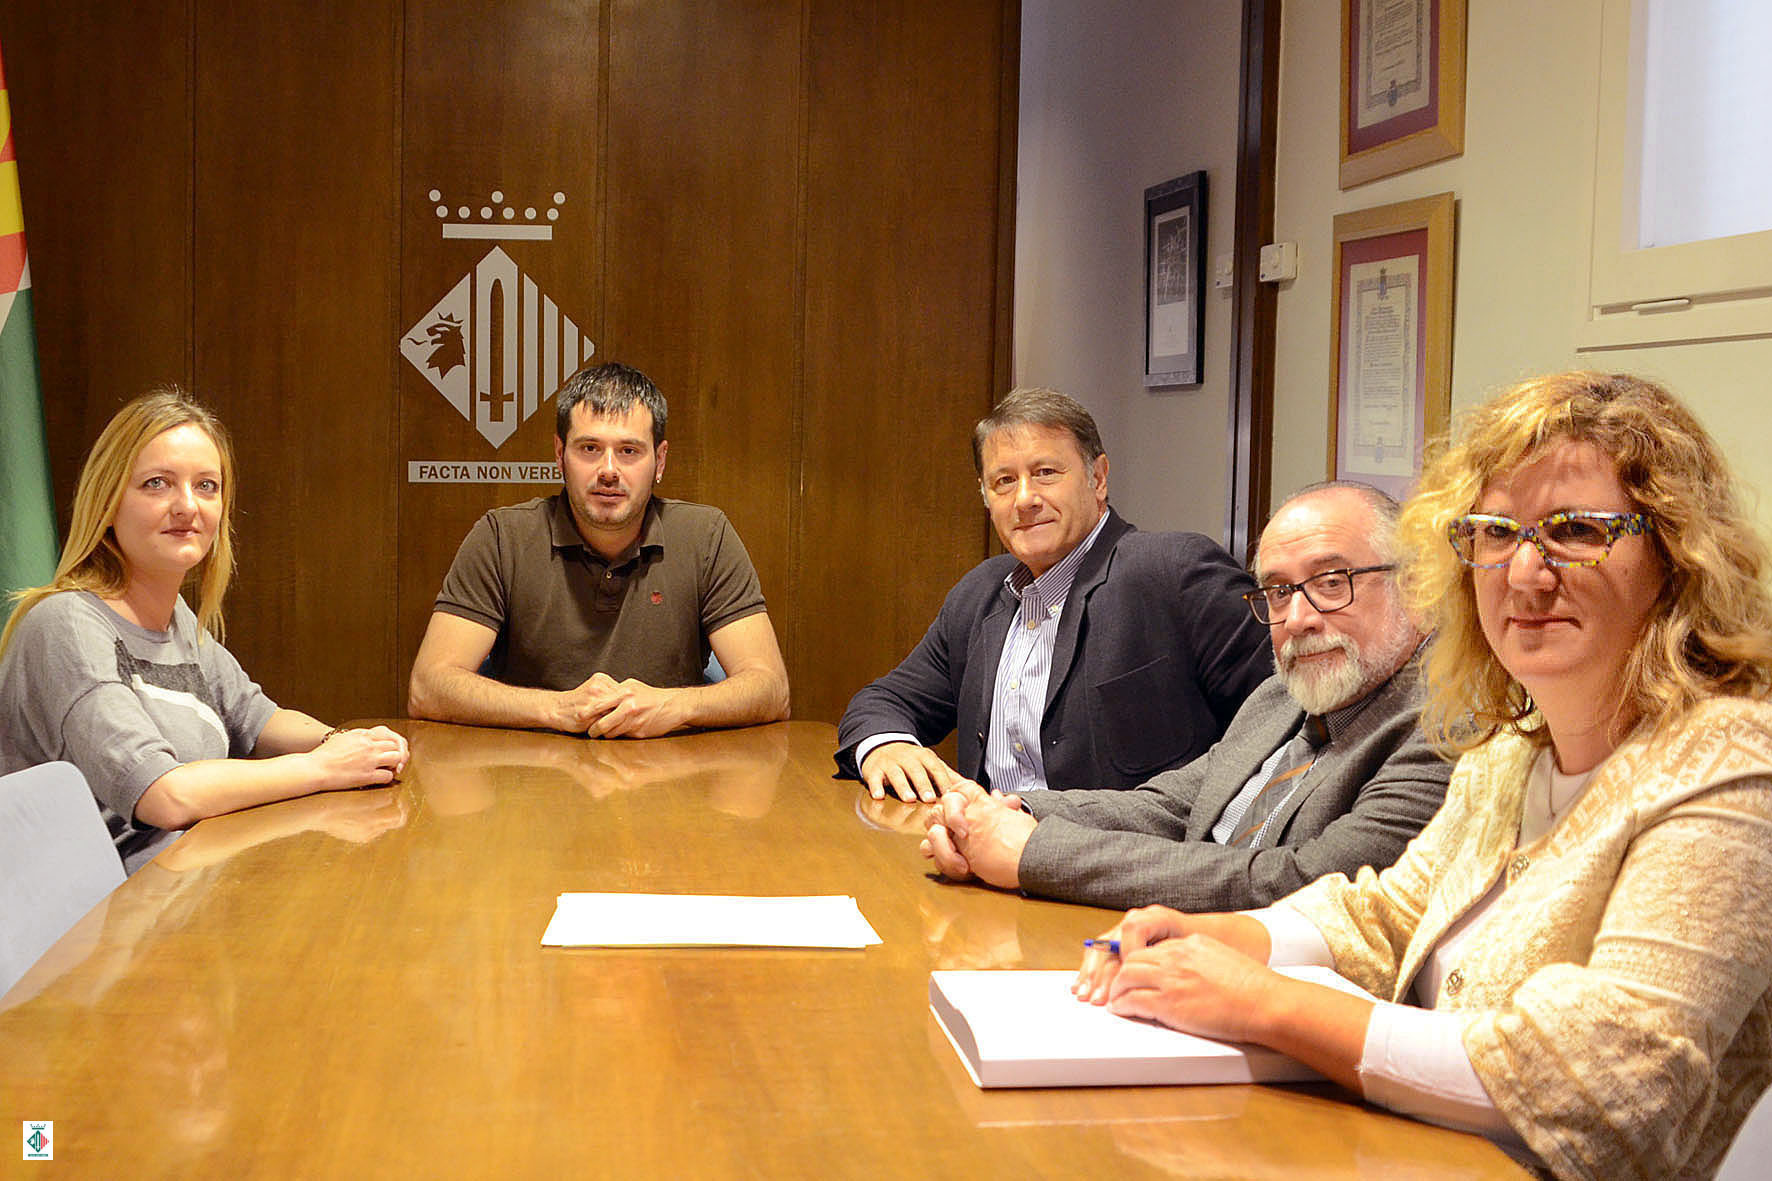 Un moment de la recepció oferta per l'alcalde al president de la Federació Catalana d'Handbol